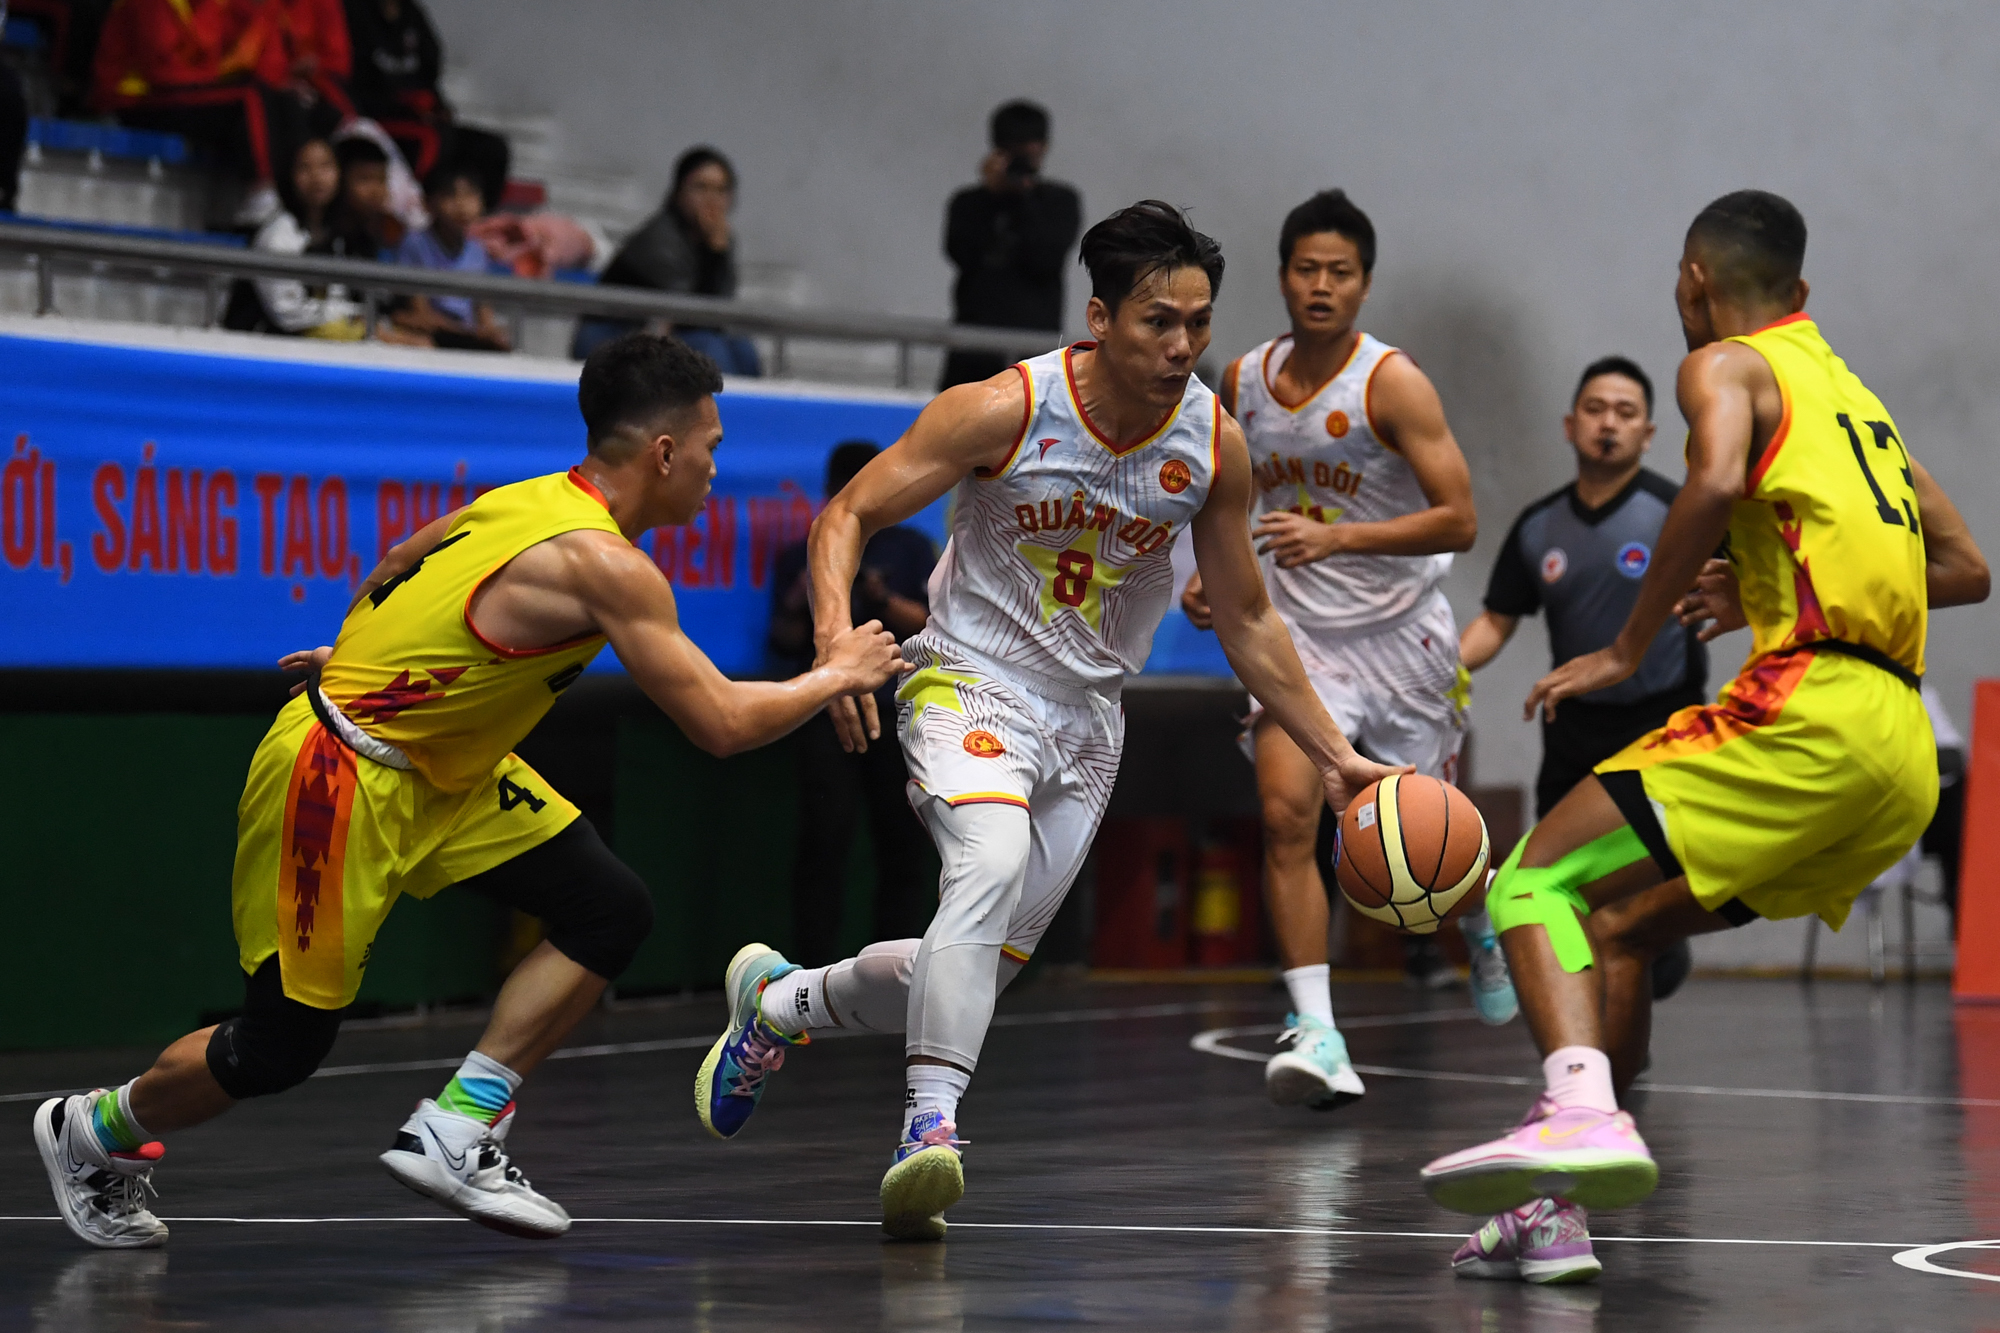 Bảo toàn chuỗi bất bại, Sóc Trăng vô địch bóng rổ nam 5x5 Đại hội Thể thao toàn quốc 2022 - Ảnh 2.